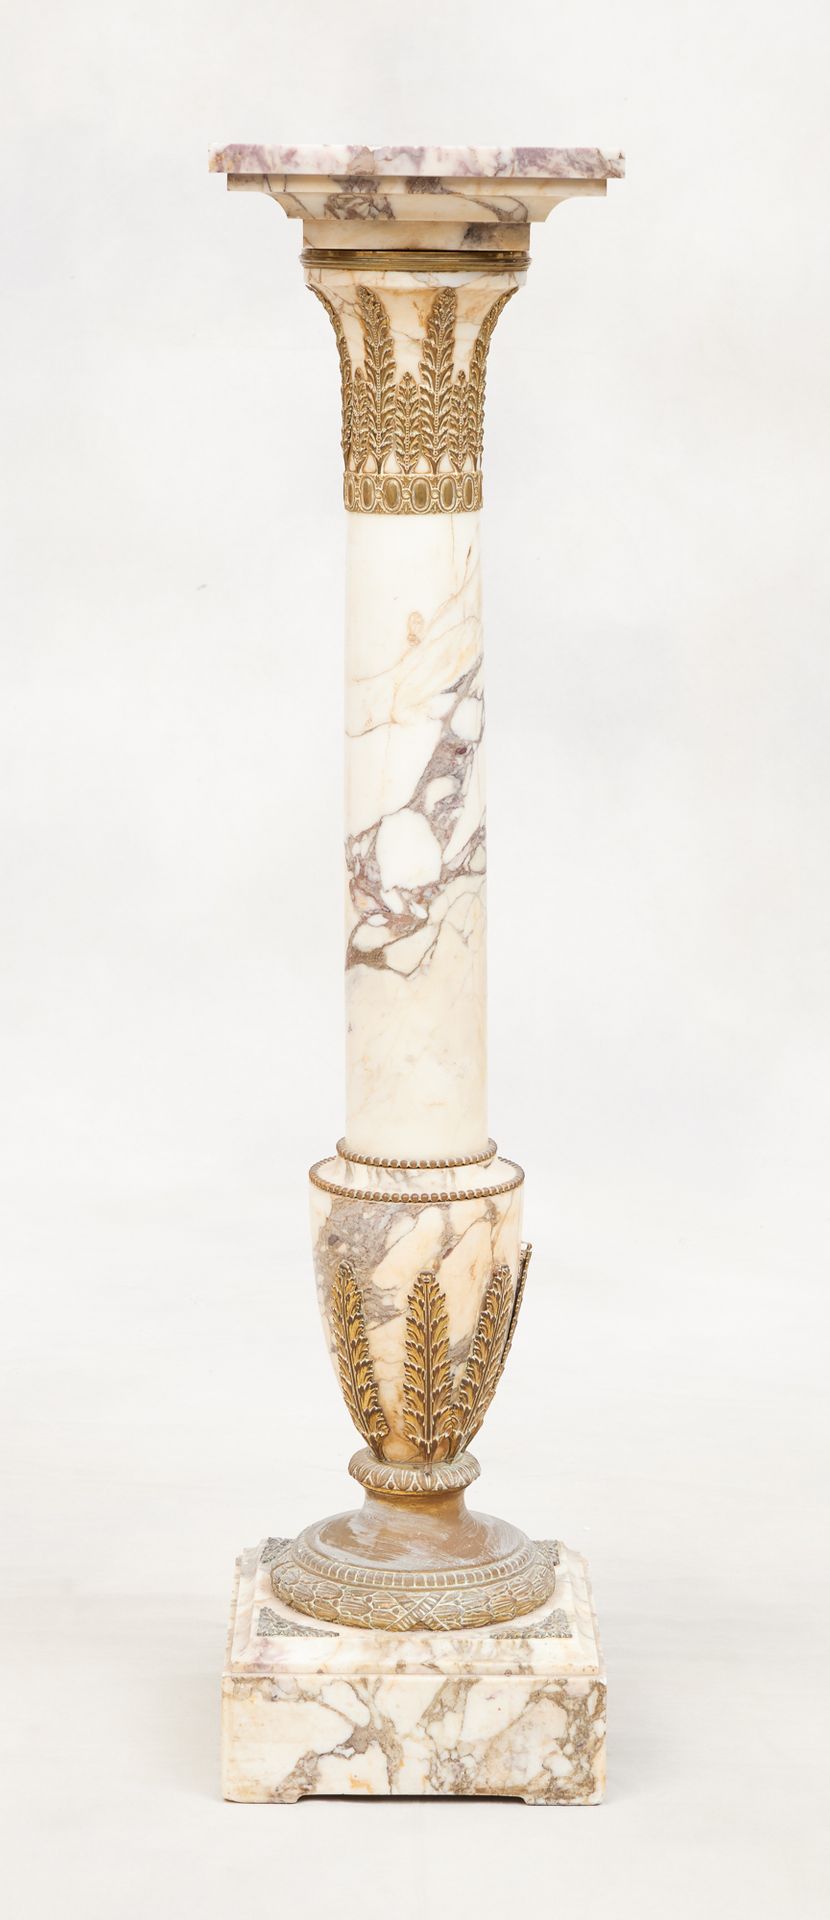 Circa 1900. Mobile: colonna in marmo con riflessi in bronzo dorato.
Altezza: 112&hellip;